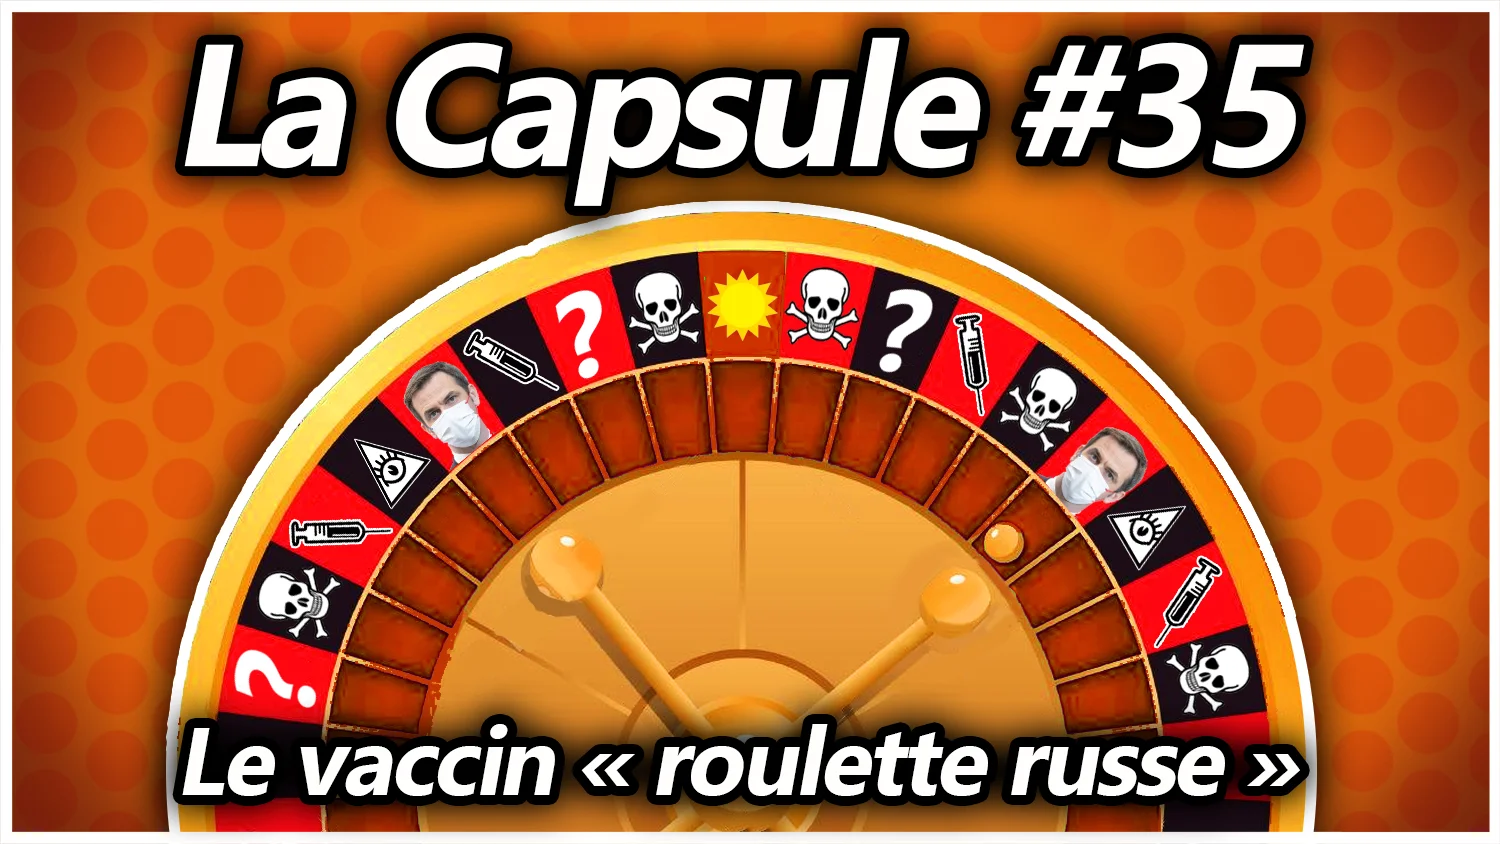 La Capsule #35 – Le vaccin «roulette russe»